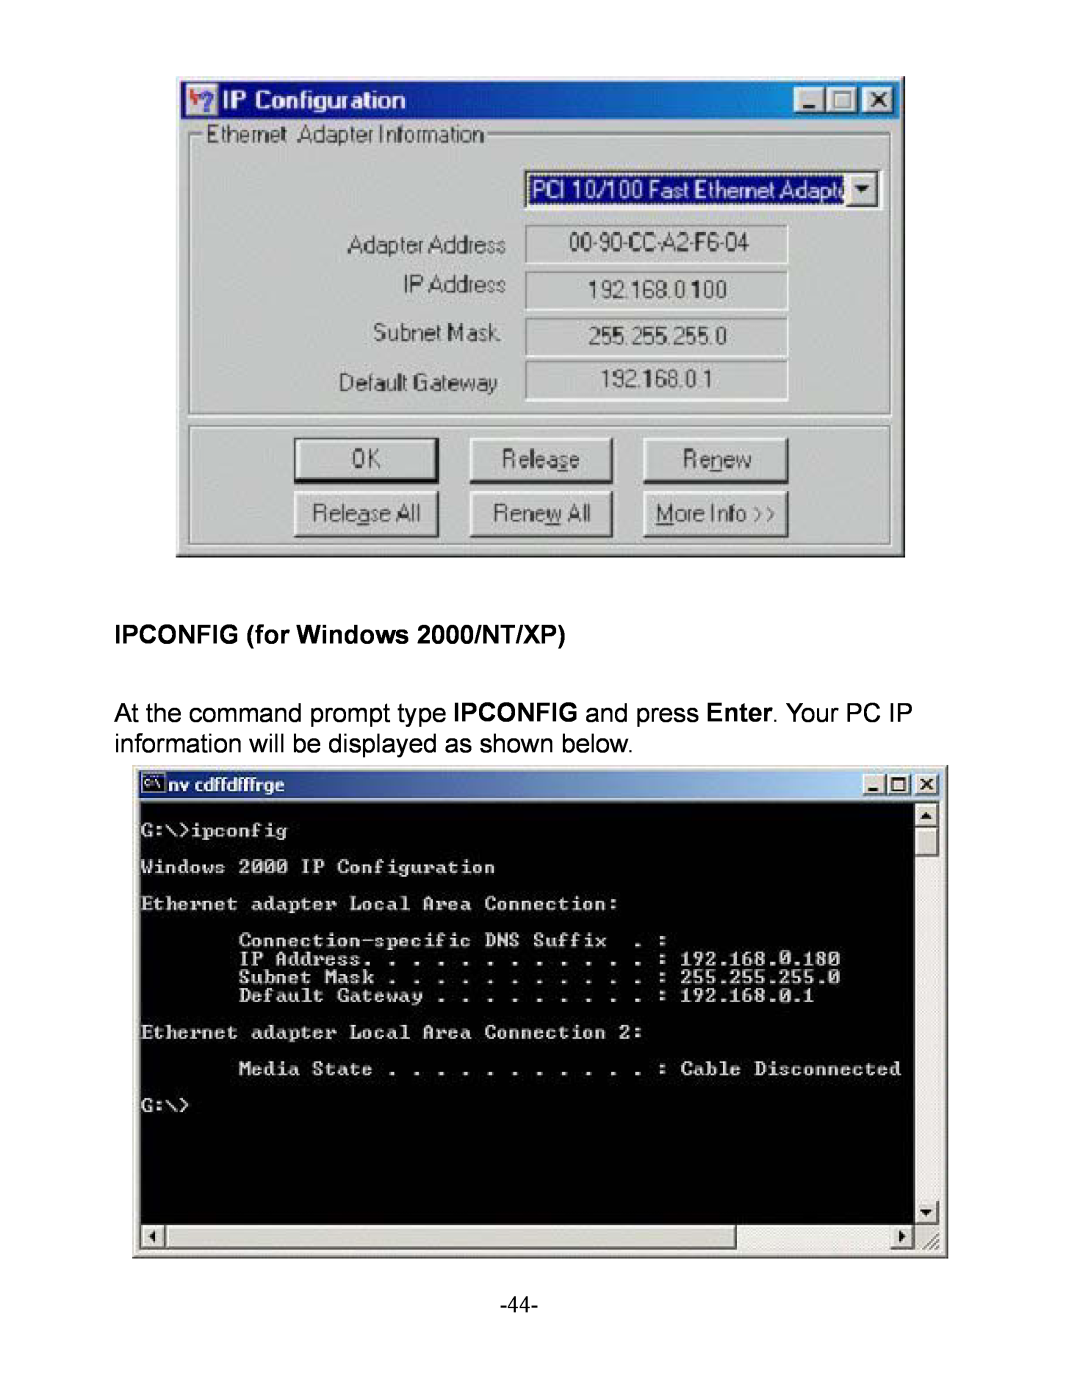 D-Link DI-604 manual IPCONFIG for Windows 2000/NT/XP 